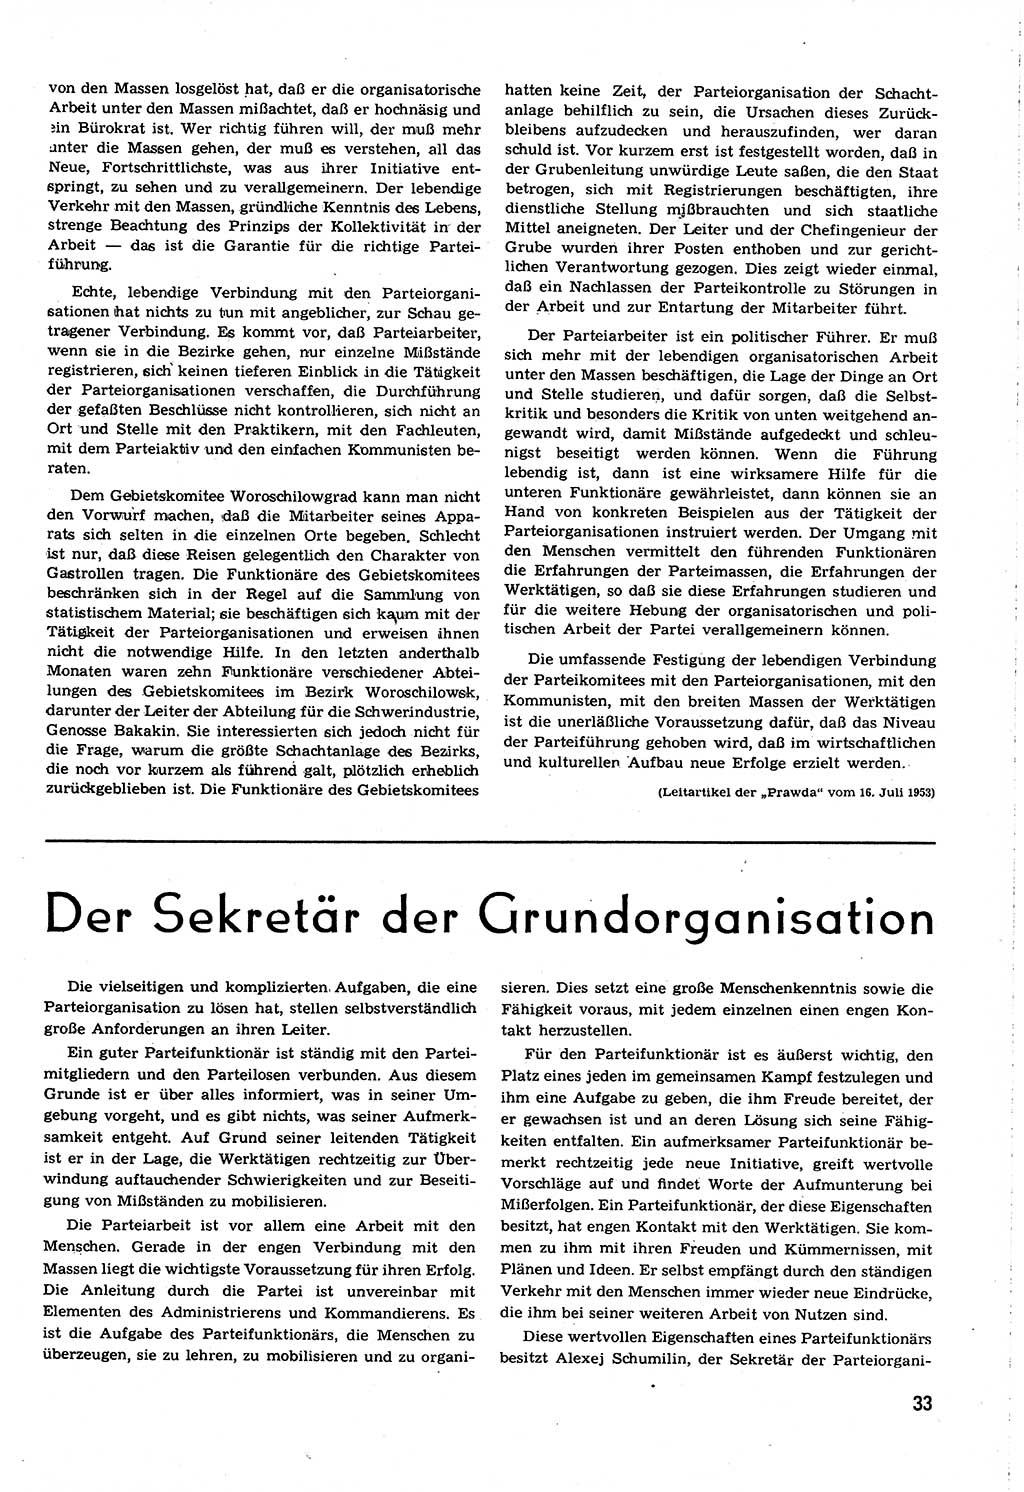 Neuer Weg (NW), Organ des Zentralkomitees (ZK) [Sozialistische Einheitspartei Deutschlands (SED)] für alle Parteiarbeiter, 8. Jahrgang [Deutsche Demokratische Republik (DDR)] 1953, Heft 14/33 (NW ZK SED DDR 1953, H. 14/33)